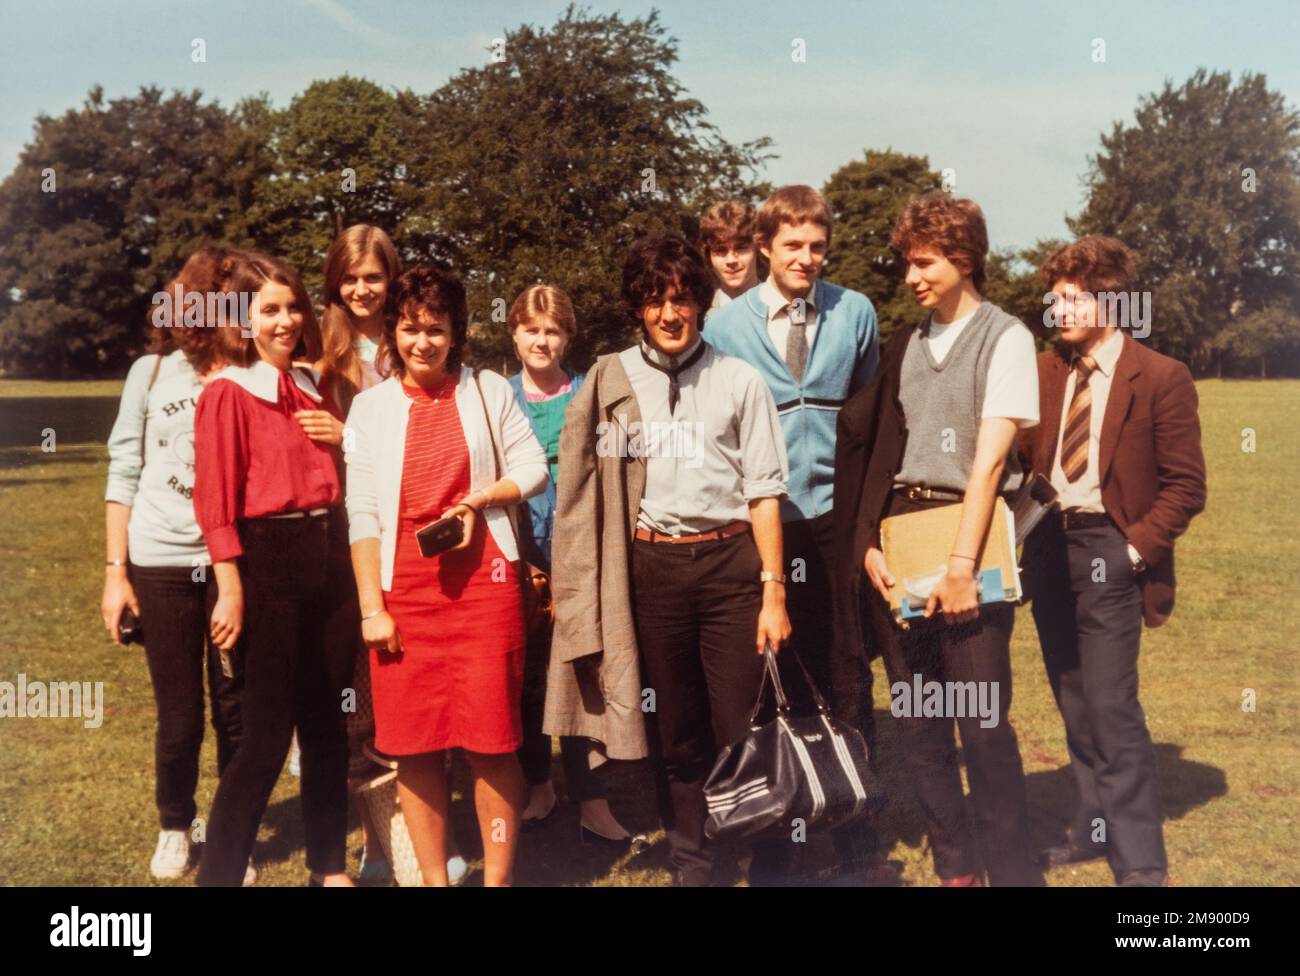 Grupo de estudiantes de sexto curso de 18 años, foto de archivo de 1982 Foto de stock